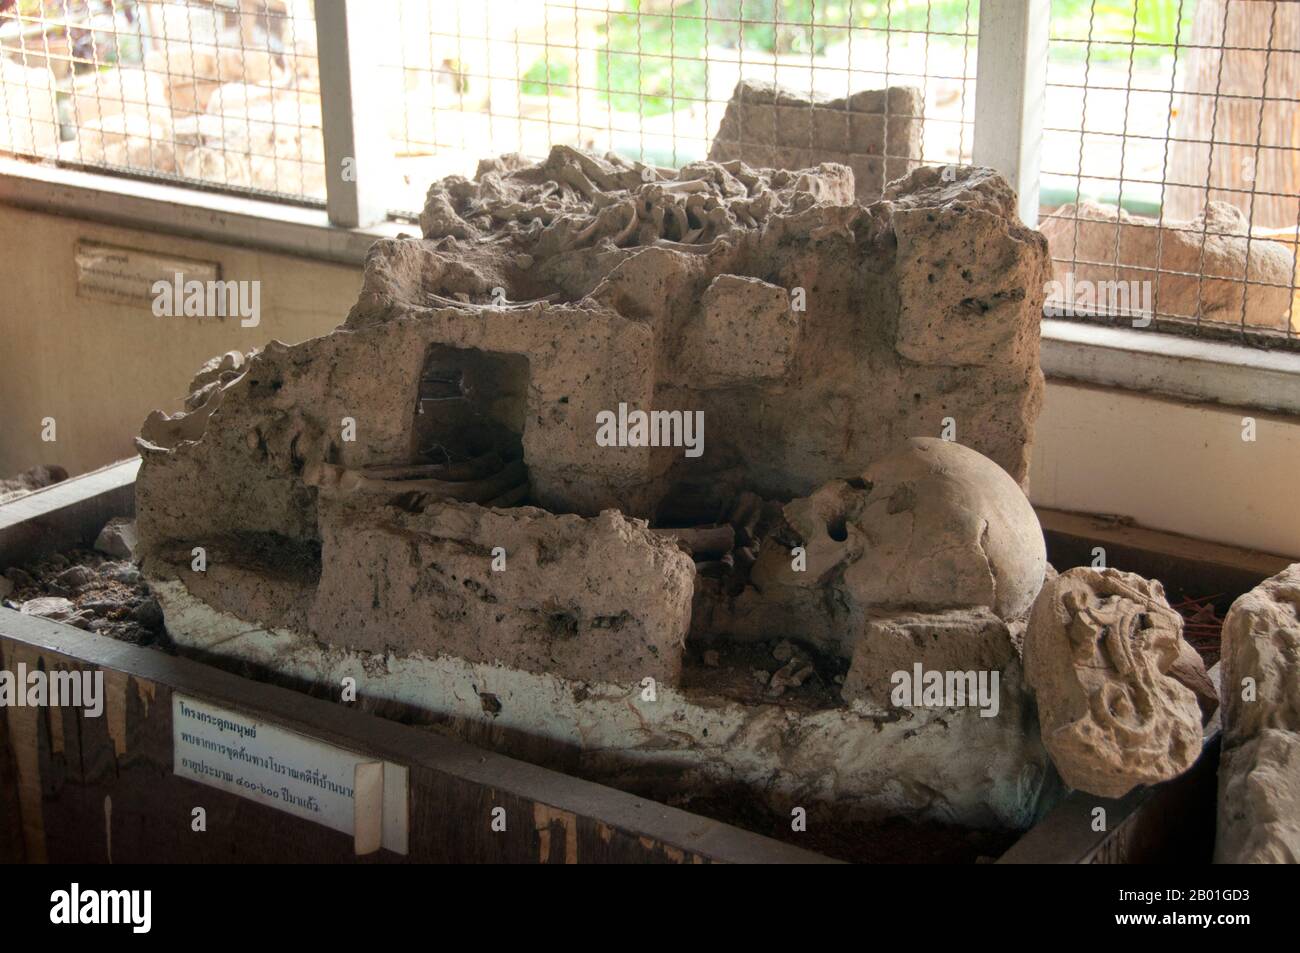 Thailand: Skelettreste wurden in Wiang Tha Kan gefunden, jetzt im kleinen Museum in der Provinz Chiang Mai. Wiang Tha Khan, 16km km südlich von Chiang Mai im ländlichen Stadtteil Sanpatong gelegen, ist ein kleines und wohlhabendes nordthailändisches Dorf inmitten von Lamyai-Plantagen und bewohnt von Tai Yong, das zu Beginn des 19. Jahrhunderts vom nahe gelegenen Shan-Staat in Burma neu angesiedelt wurde. Schon im 10. Jahrhundert war es eine befestigte Stadt oder „wiang“, die als Bastion des Mon-Königreichs Haripunchai, des heutigen Lamphun, diente. Heute überleben die Überreste der Stadtmauern und des umliegenden Grabens inmitten des Lamy Stockfoto